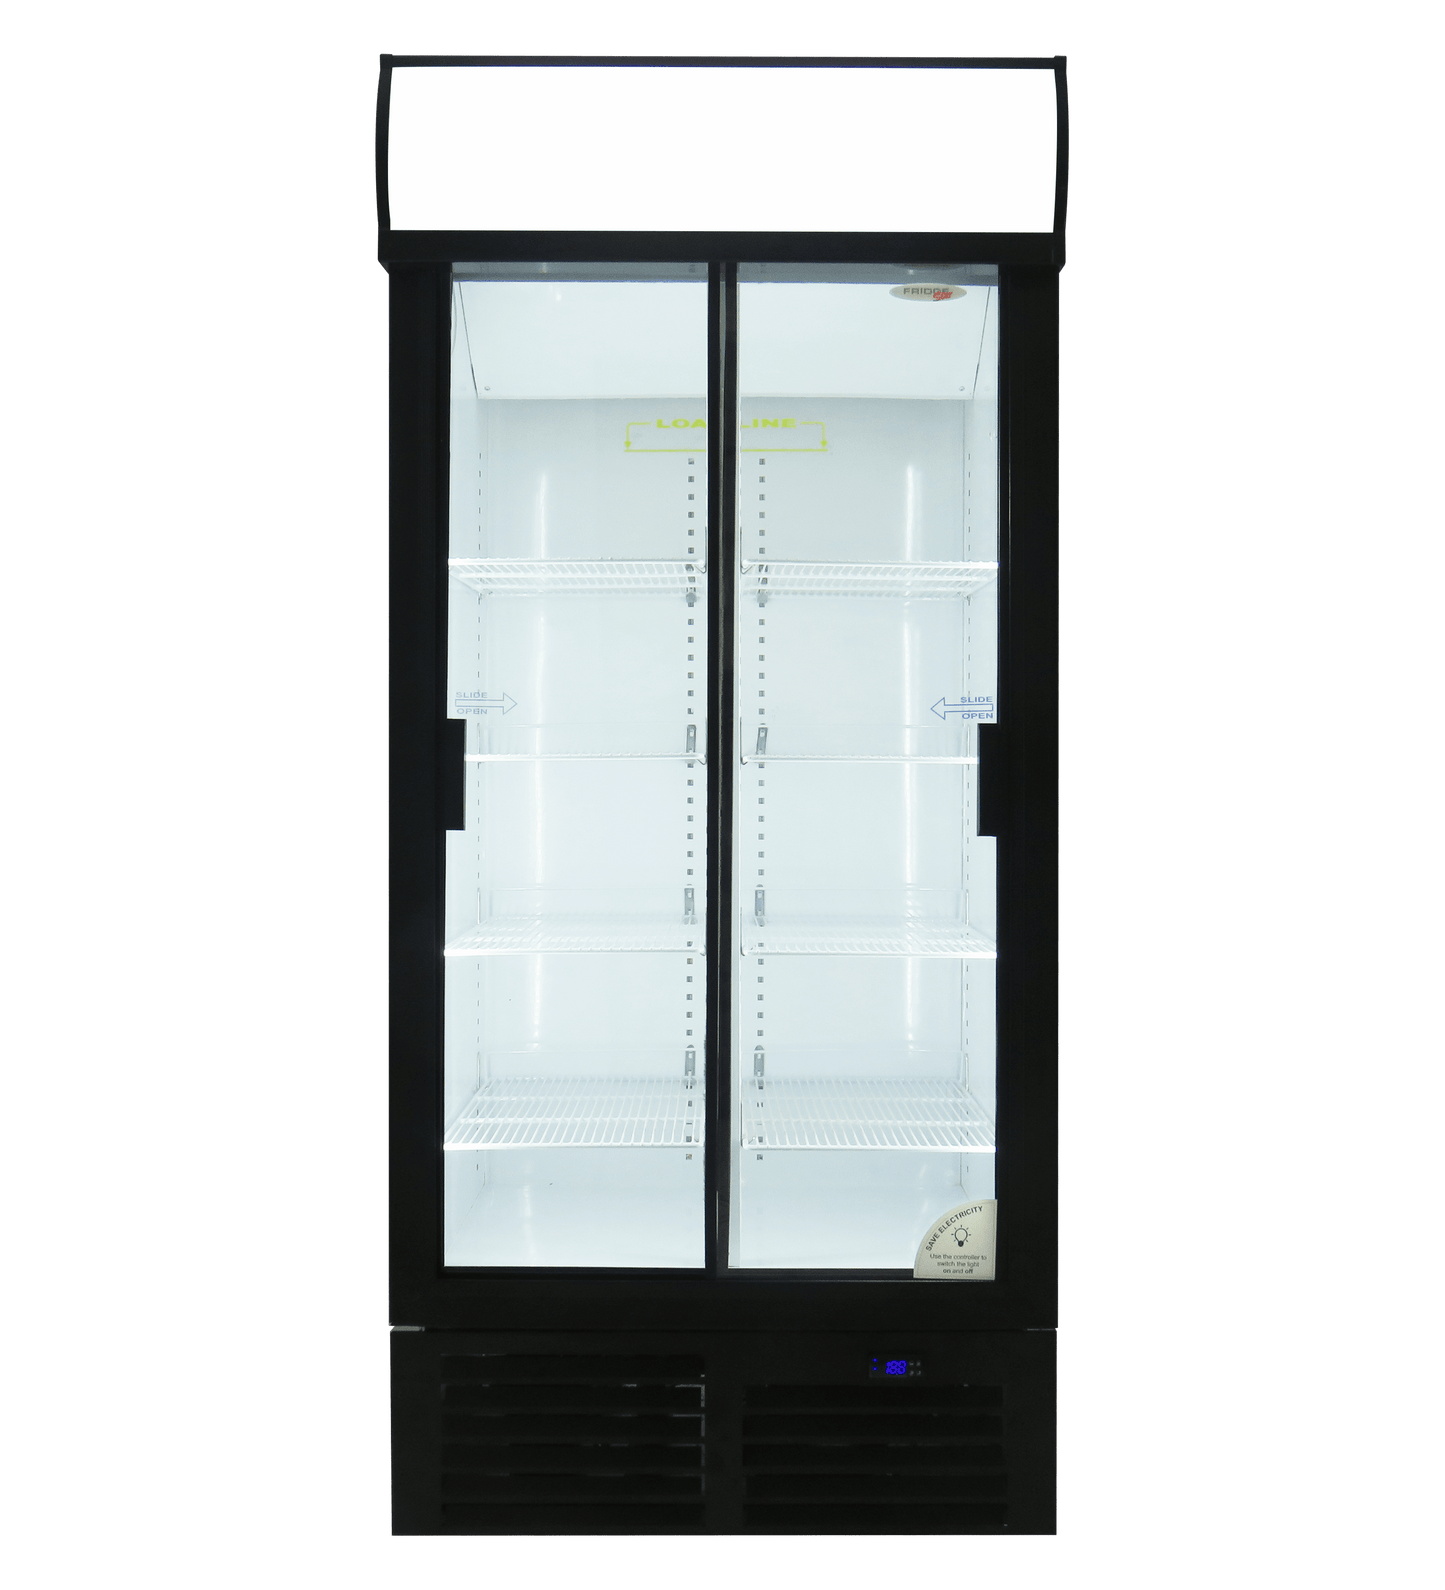 ES890 Fridge Star sliding doors beverage cooler